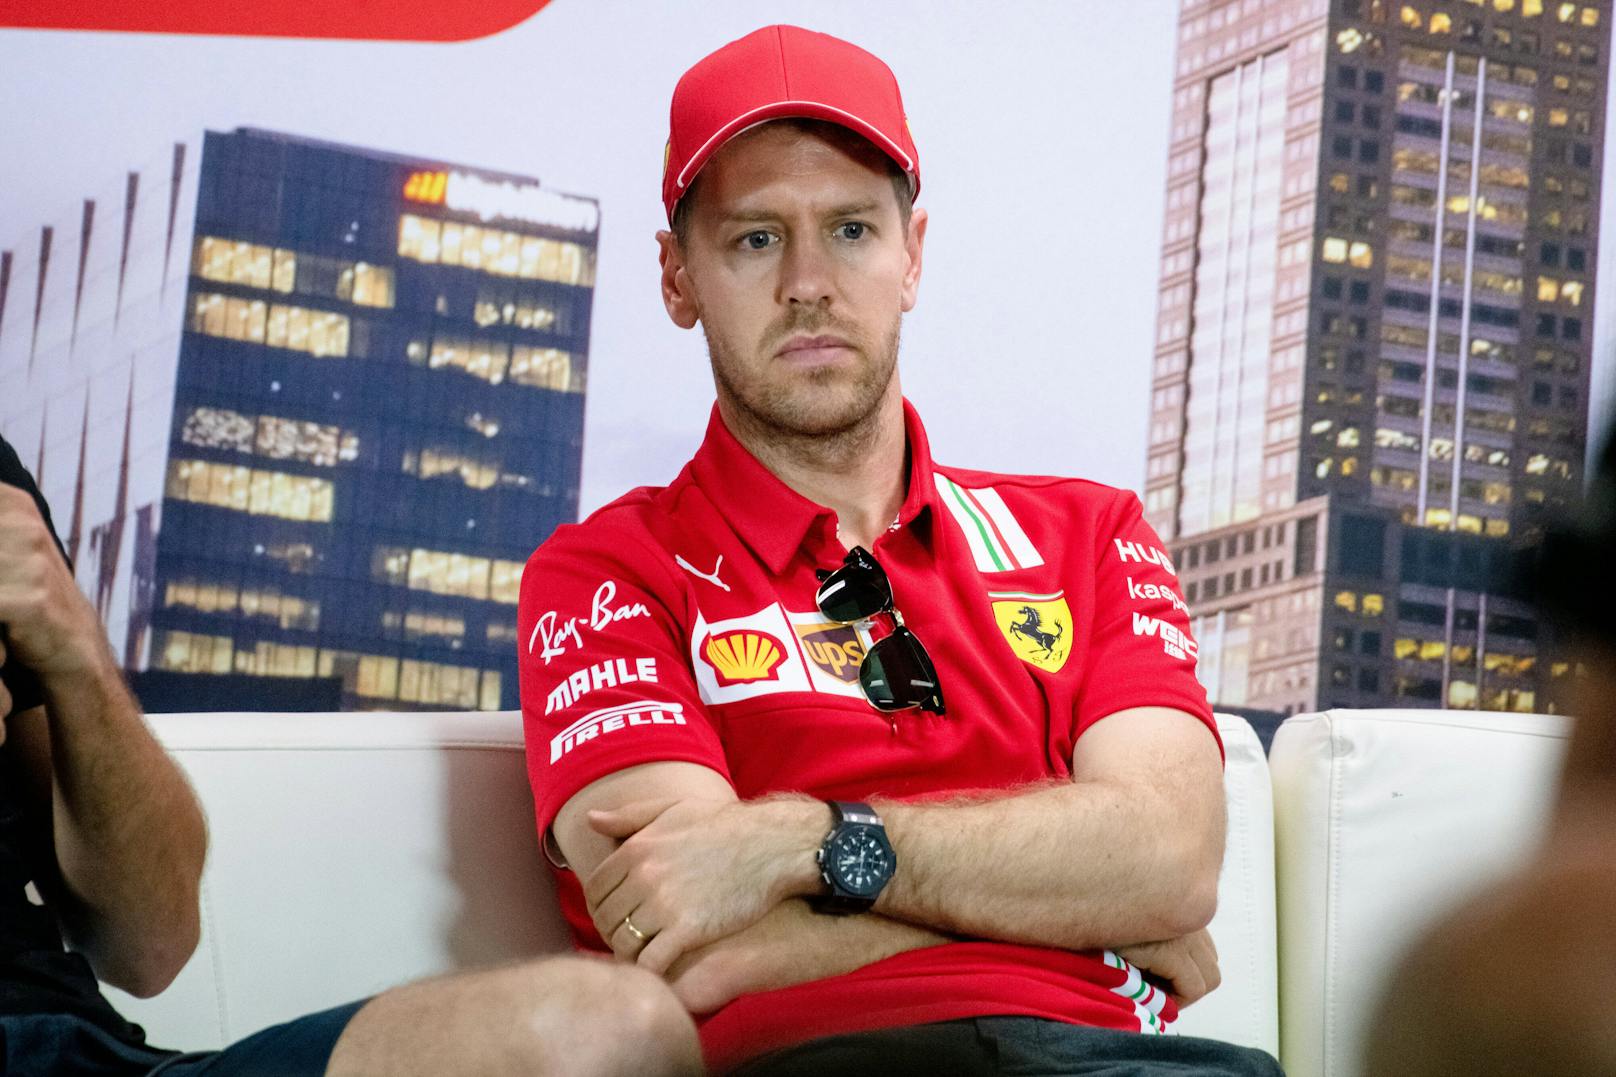 Mitten in der weltweiten Coronakrise platzte die Bombe! Sebastian Vettel wird Ferrari nach dieser Saison verlassen. Der Deutsche und die Scuderia gehen getrennte Wege.